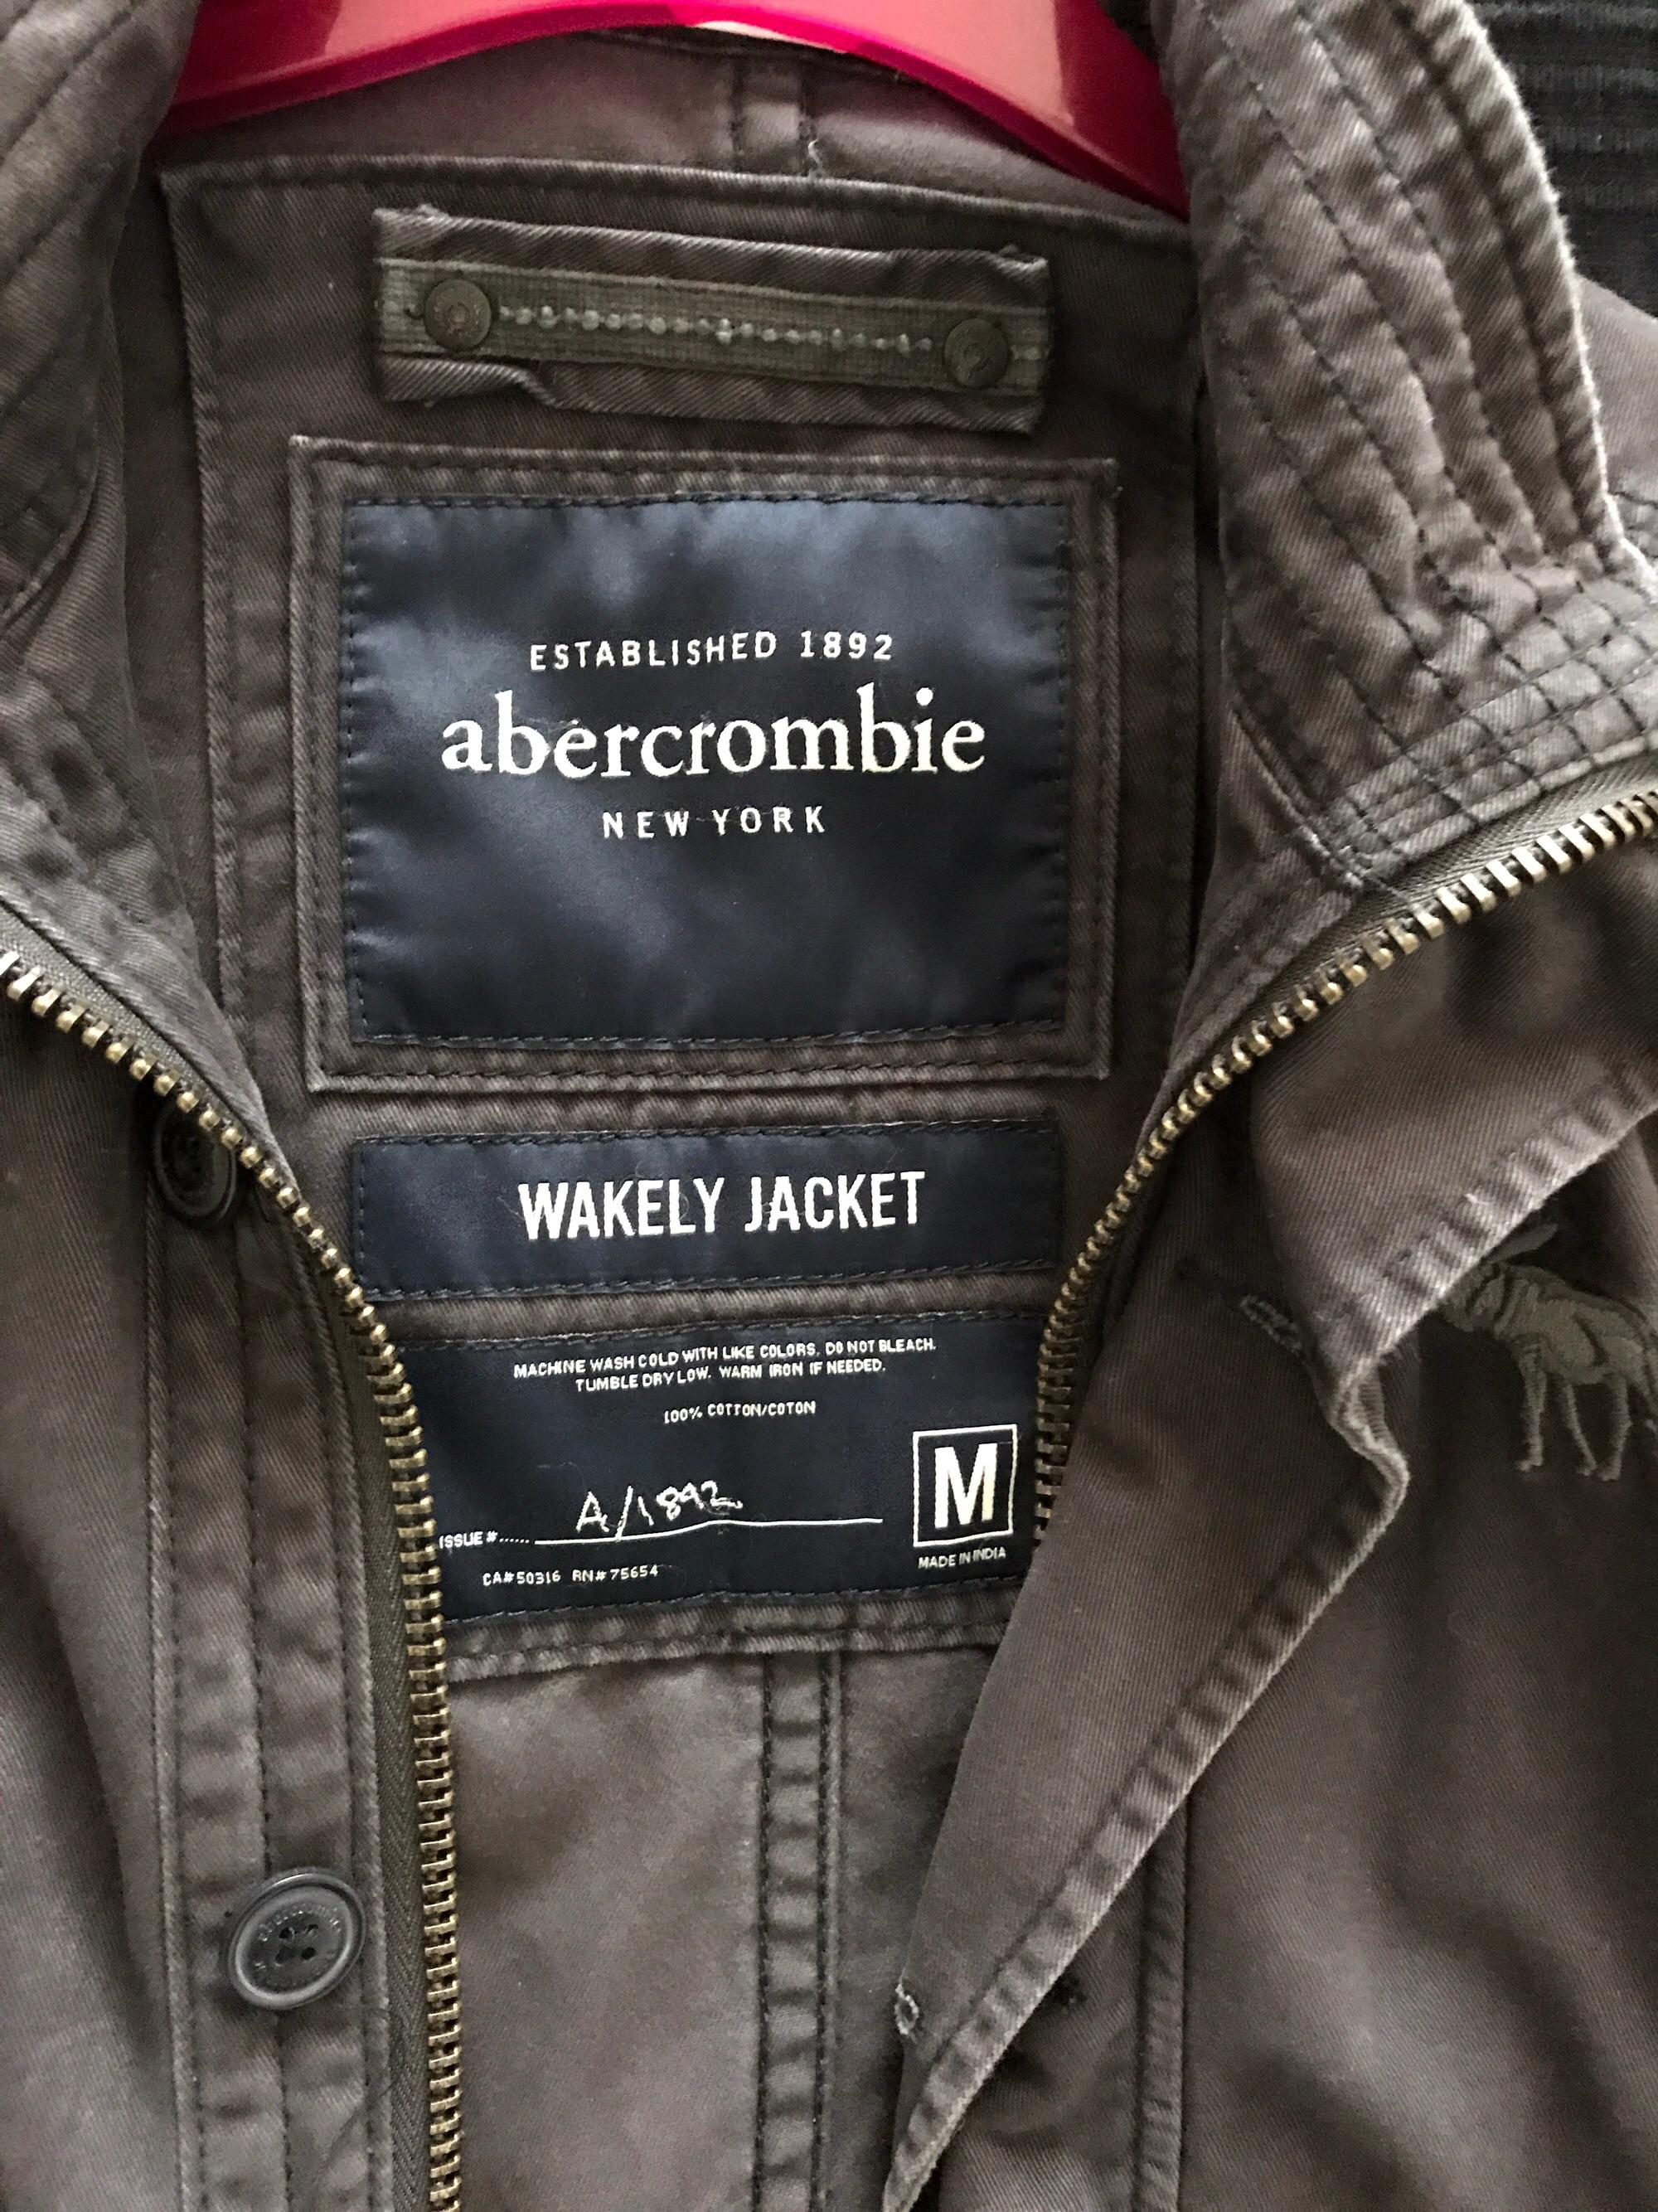 abercrombie wakely jacket